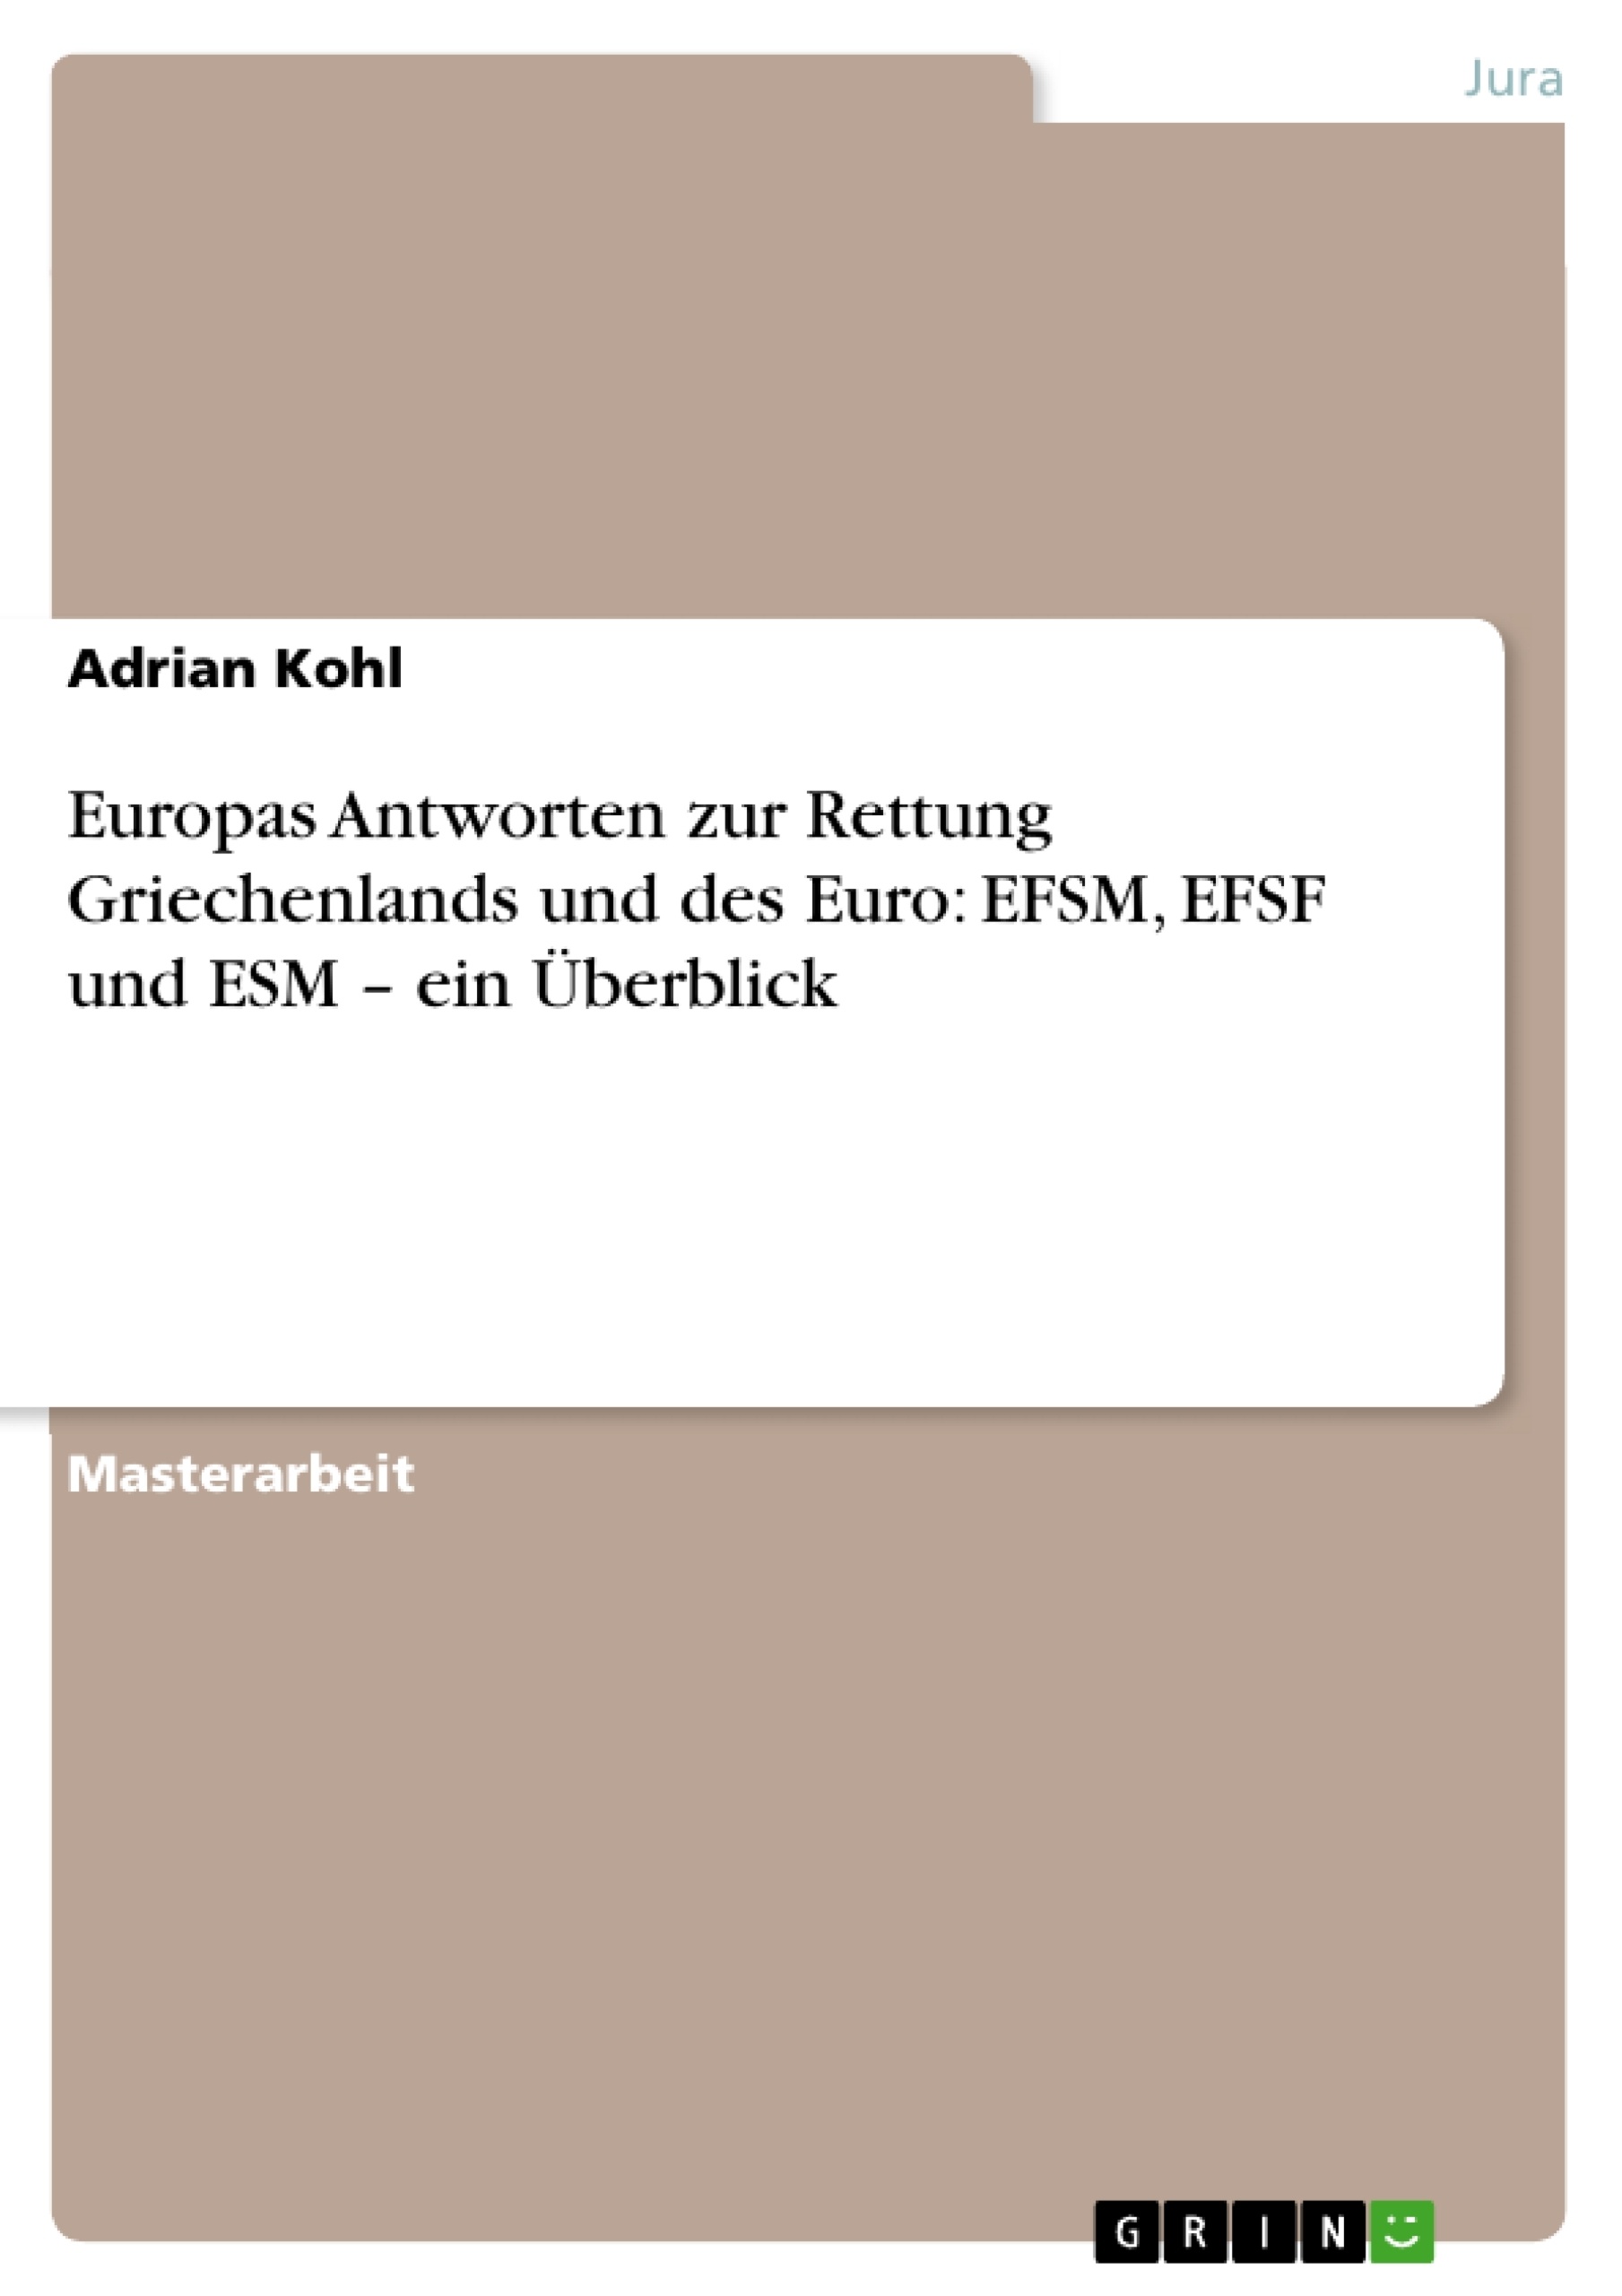 Titre: Europas Antworten zur Rettung Griechenlands und des Euro: EFSM, EFSF und ESM – ein Überblick